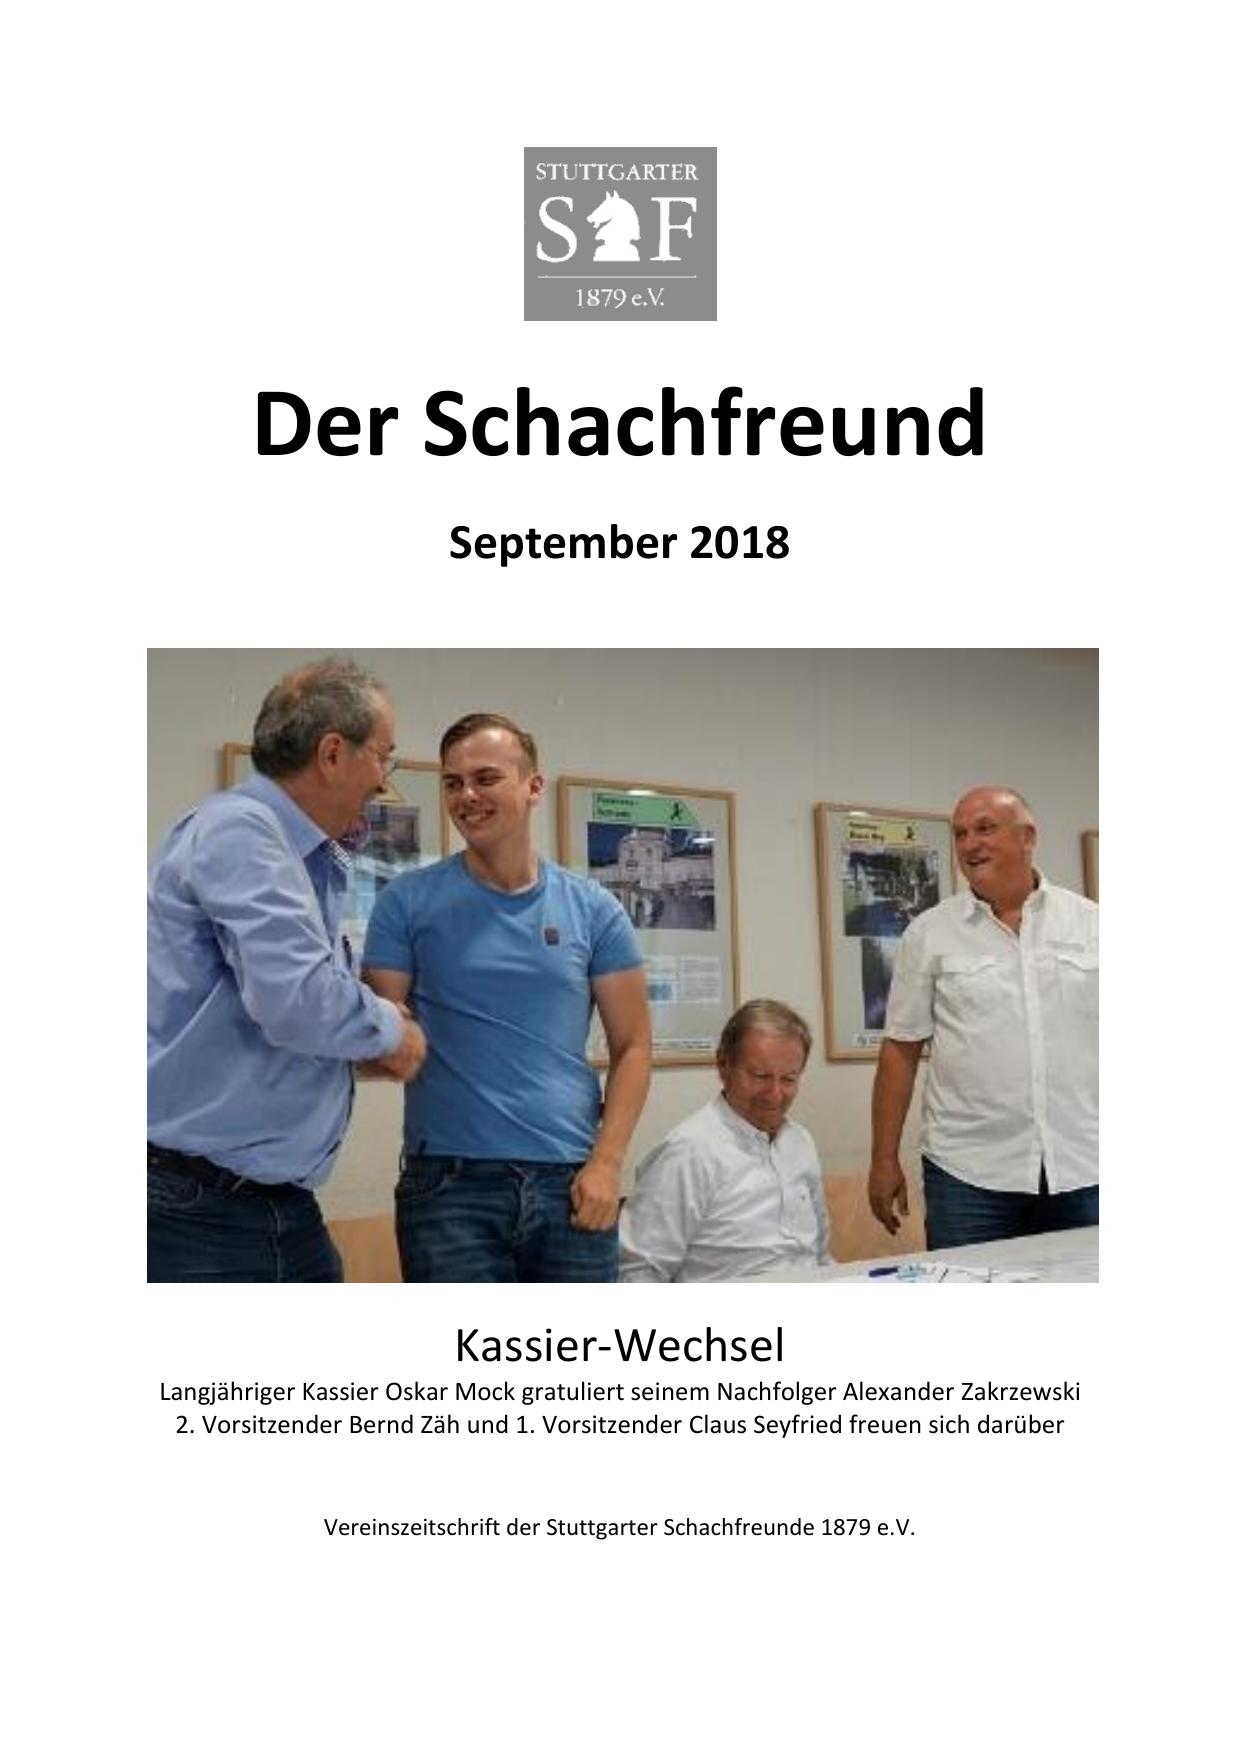 Schachfreund-2018-09